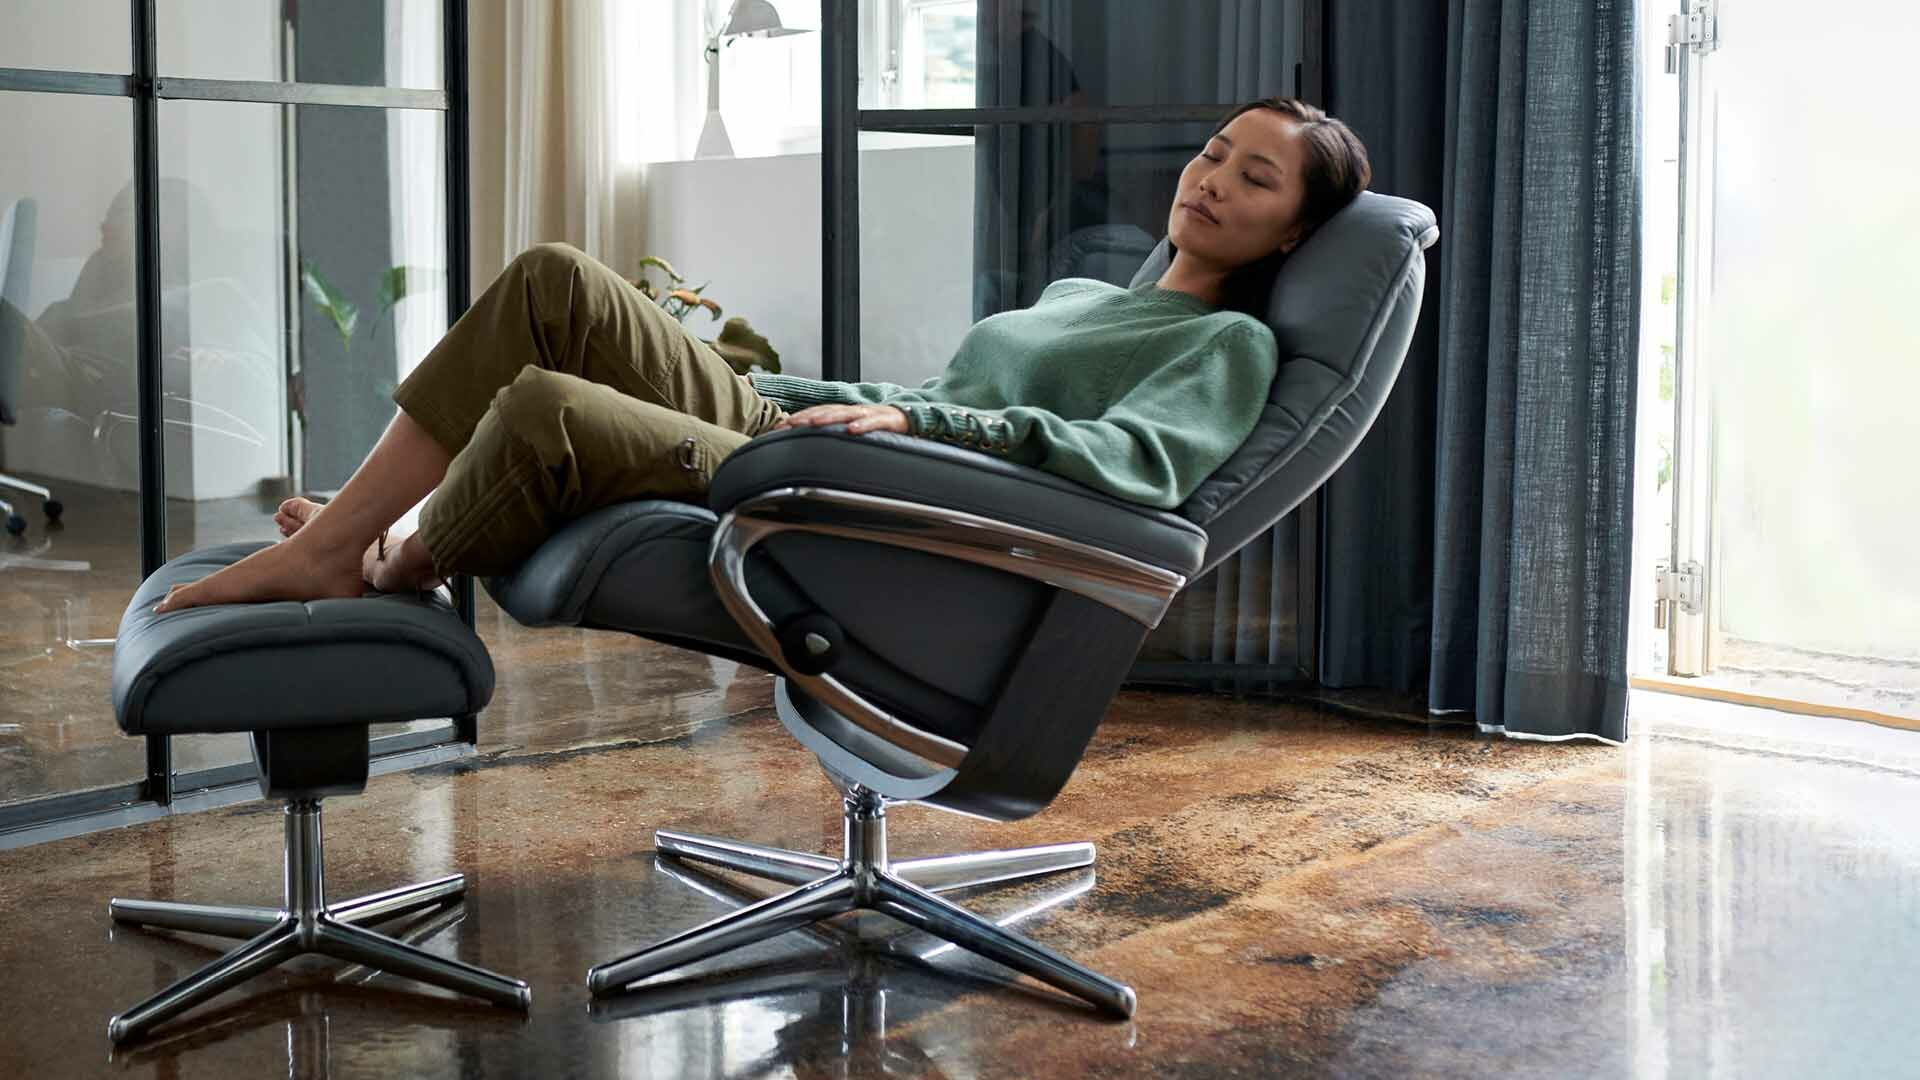 Recibe tus visitas con clase y elegancia gracias al diseño escandinavo de los sillones Stressless, lo mejor en confort y bienestar.